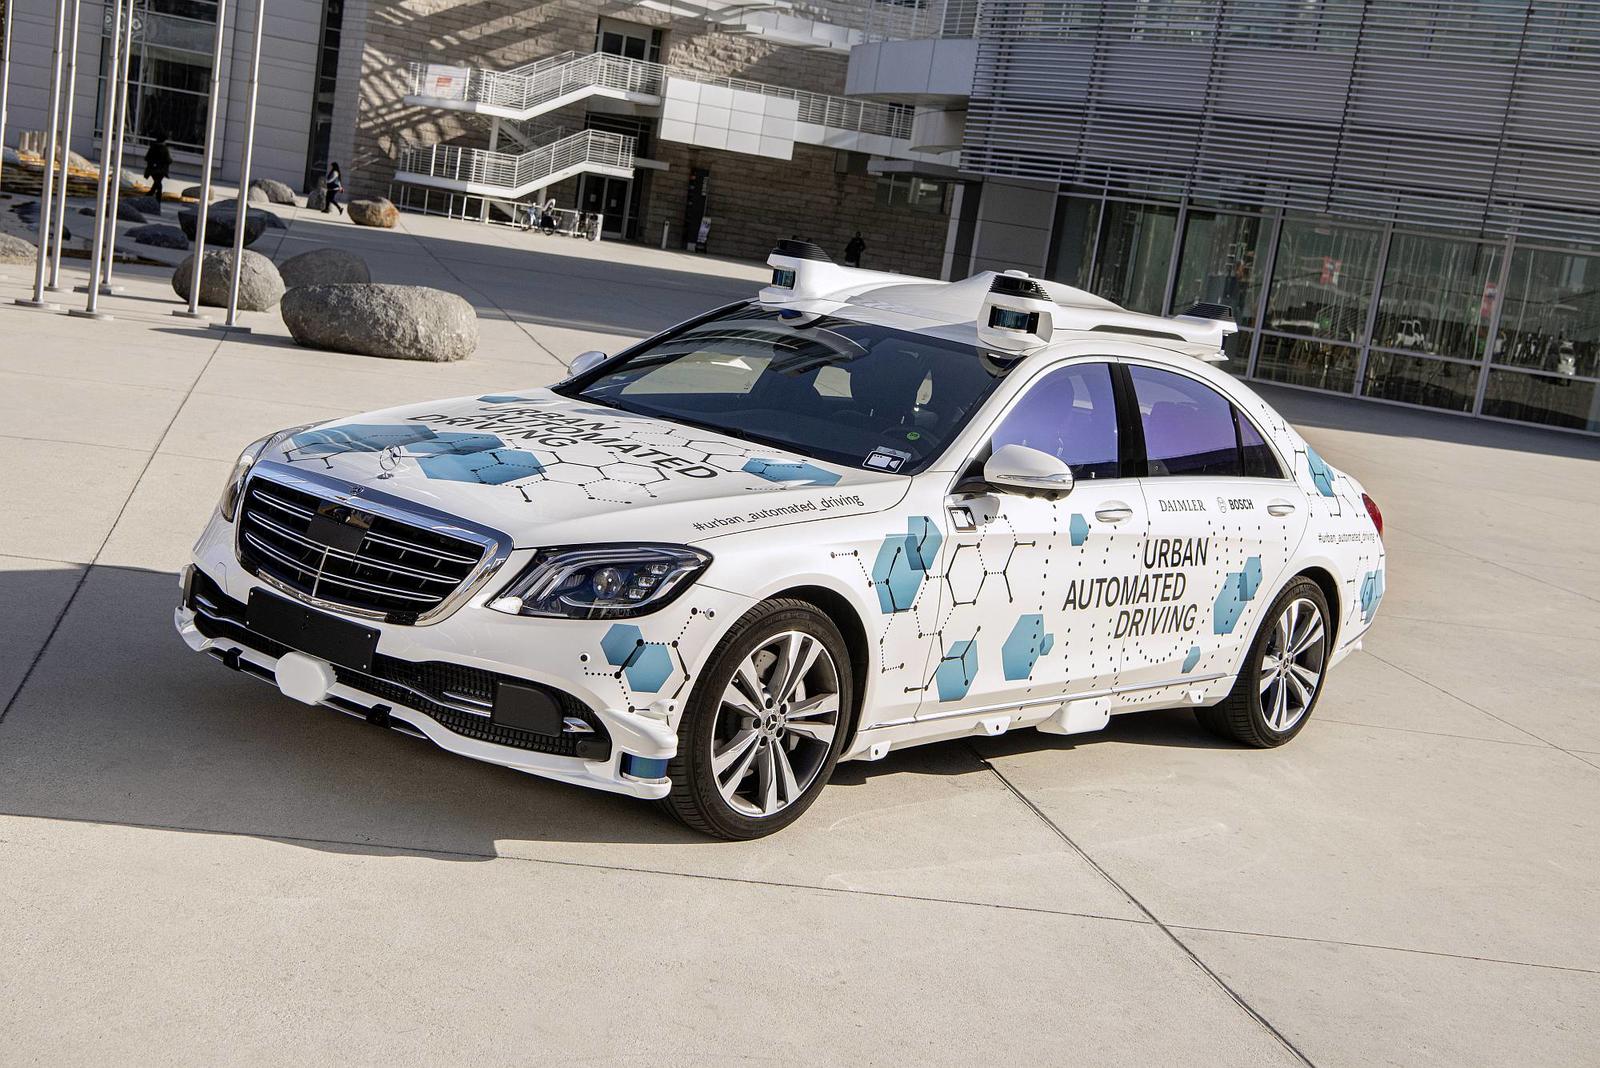 Mercedes-Benz und Bosch starten mit San José Pilotprojekt für automatisierten Mitfahrservice

Mercedes-Benz and Bosch start San José pilot project for automated ride-hailing service